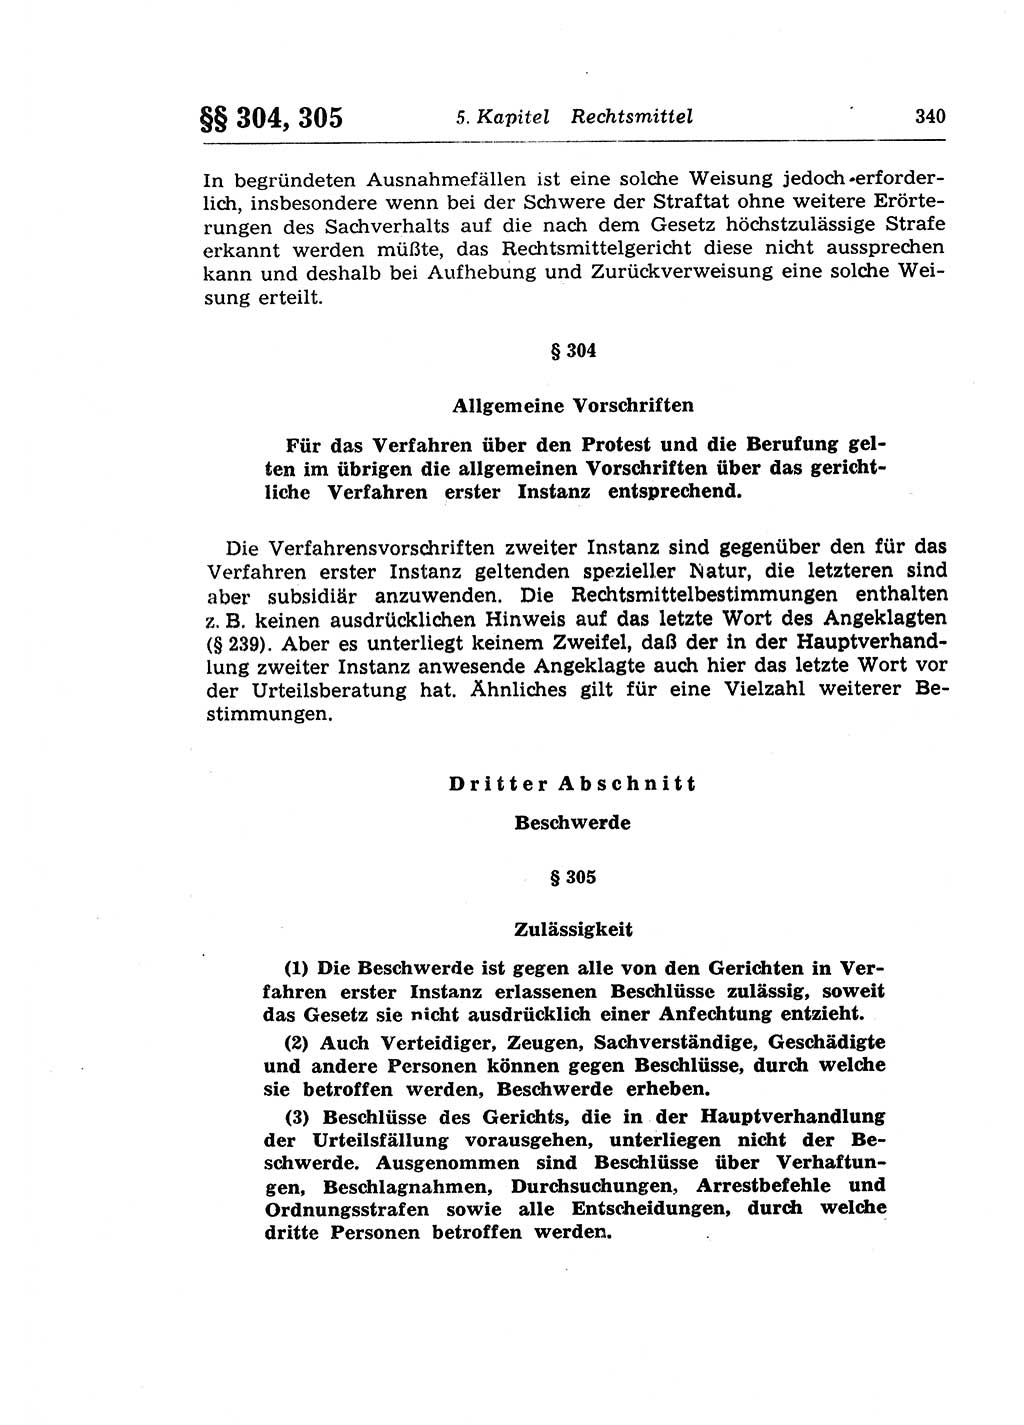 Strafprozeßrecht der DDR (Deutsche Demokratische Republik), Lehrkommentar zur Strafprozeßordnung (StPO) 1968, Seite 340 (Strafprozeßr. DDR Lehrkomm. StPO 19688, S. 340)